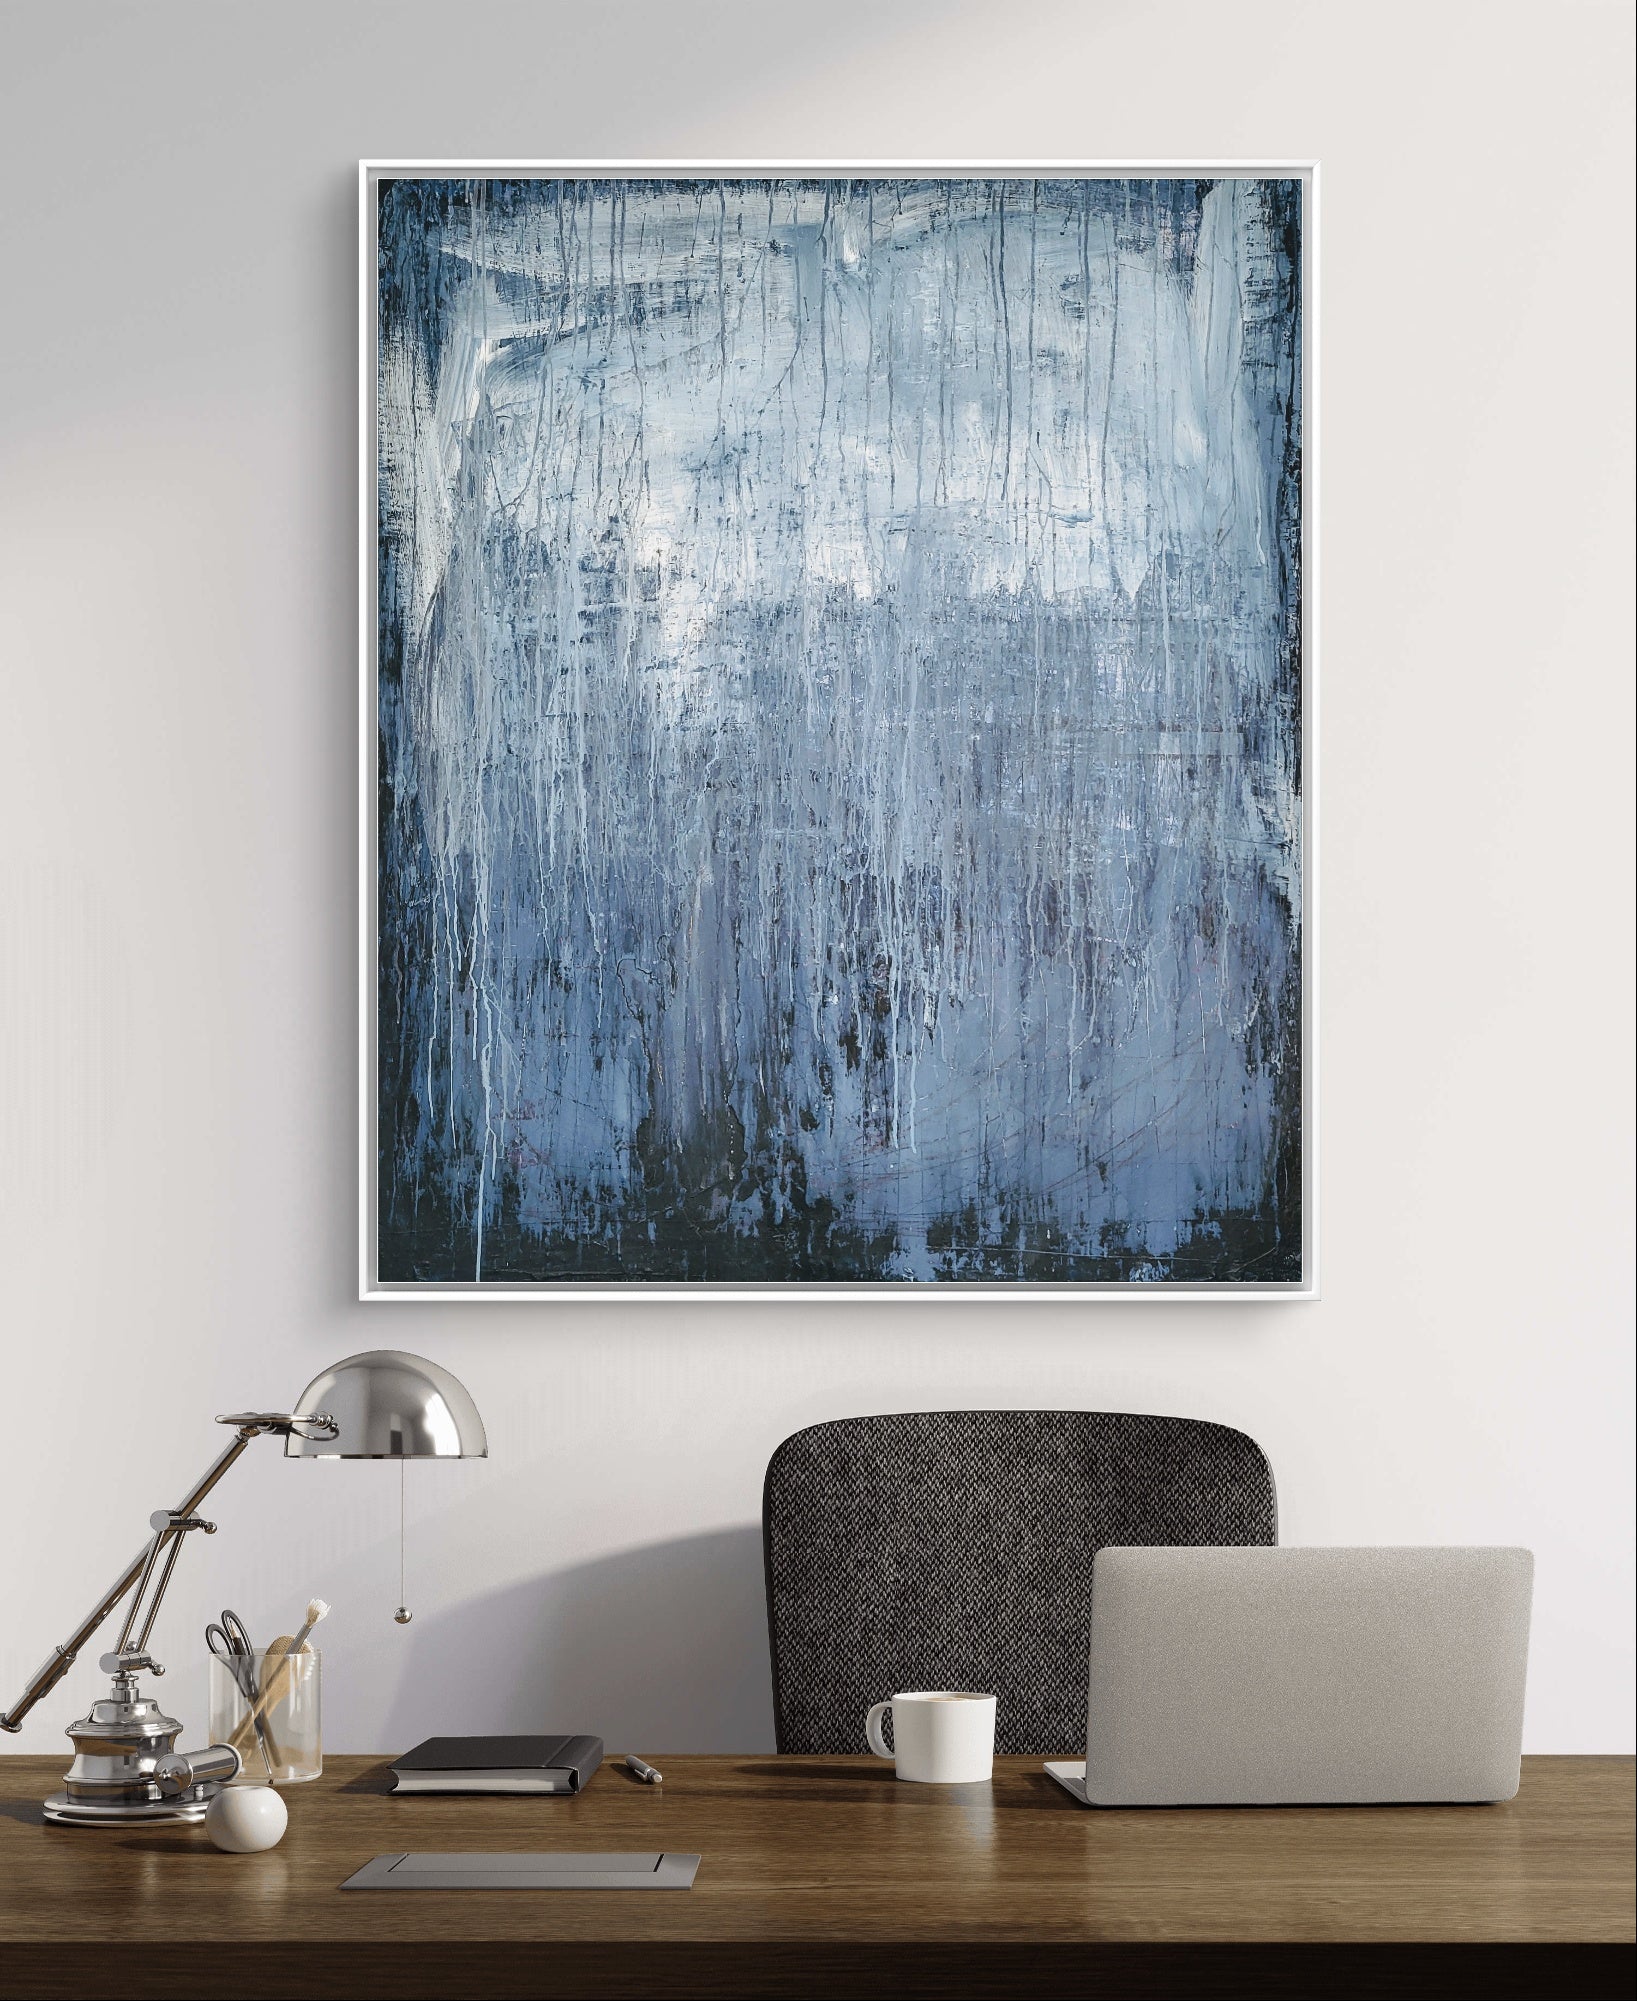 Blaues Bild - NEU IM JUNI - Motivation 120 x 100 cm - vorhandenes Unikat,abstrakte große Leinwandbilder abstrakte Bilder kaufen ,